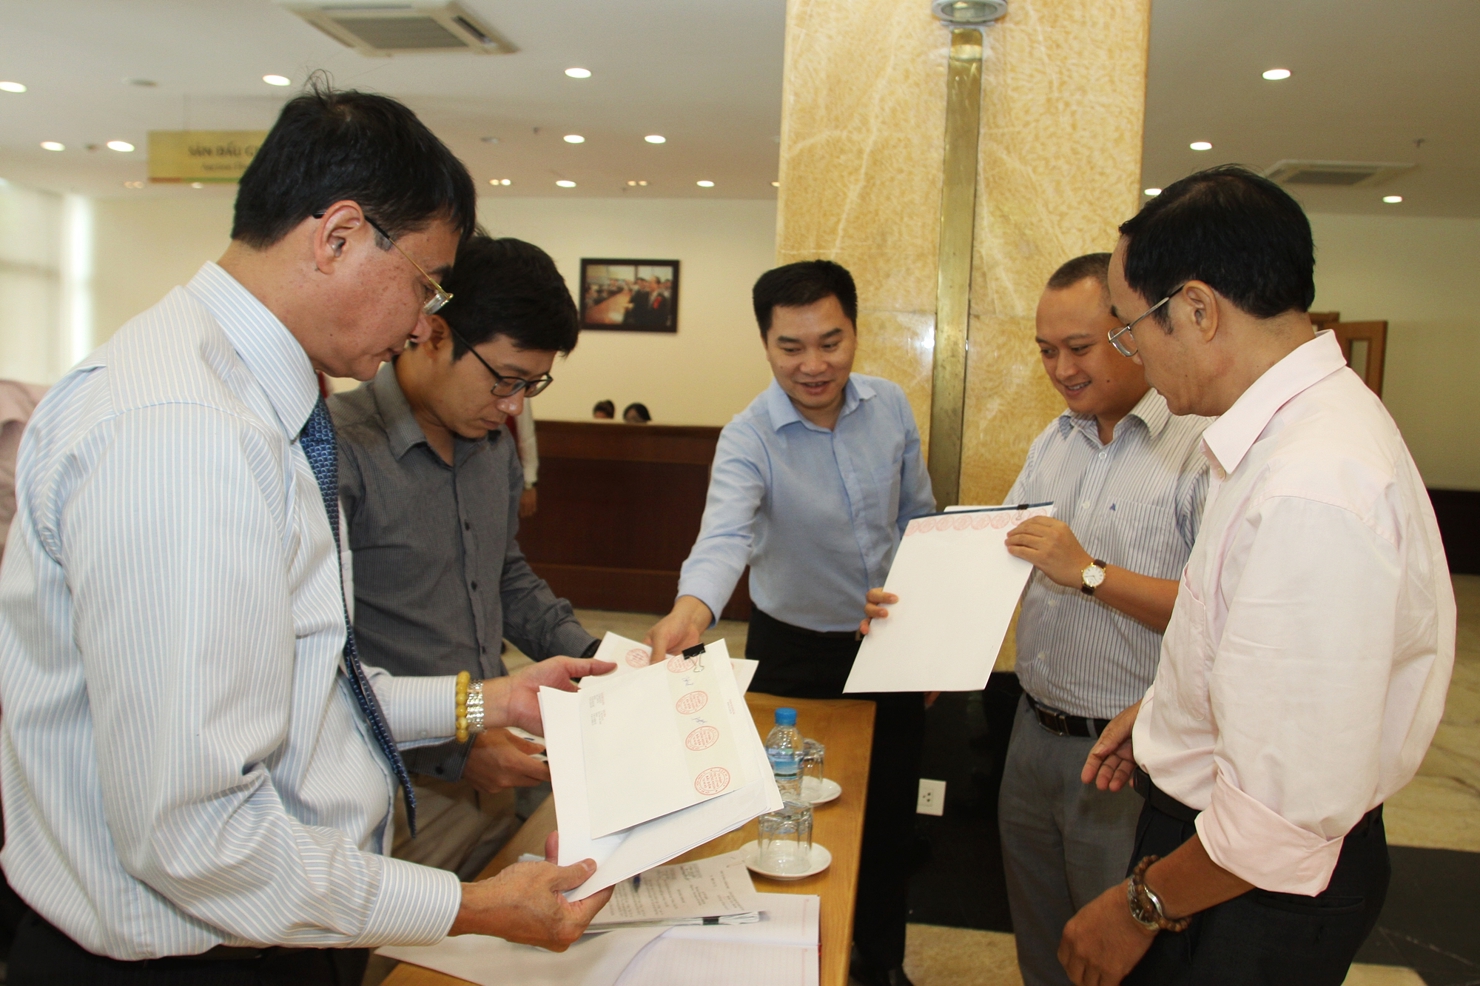 Phiên đấu giá của Tổng Công ty Chè Việt Nam đã bán hết hơn 11,7  triệu cổ phần trong tháng 9/2015. Nguồn: hnx.vn